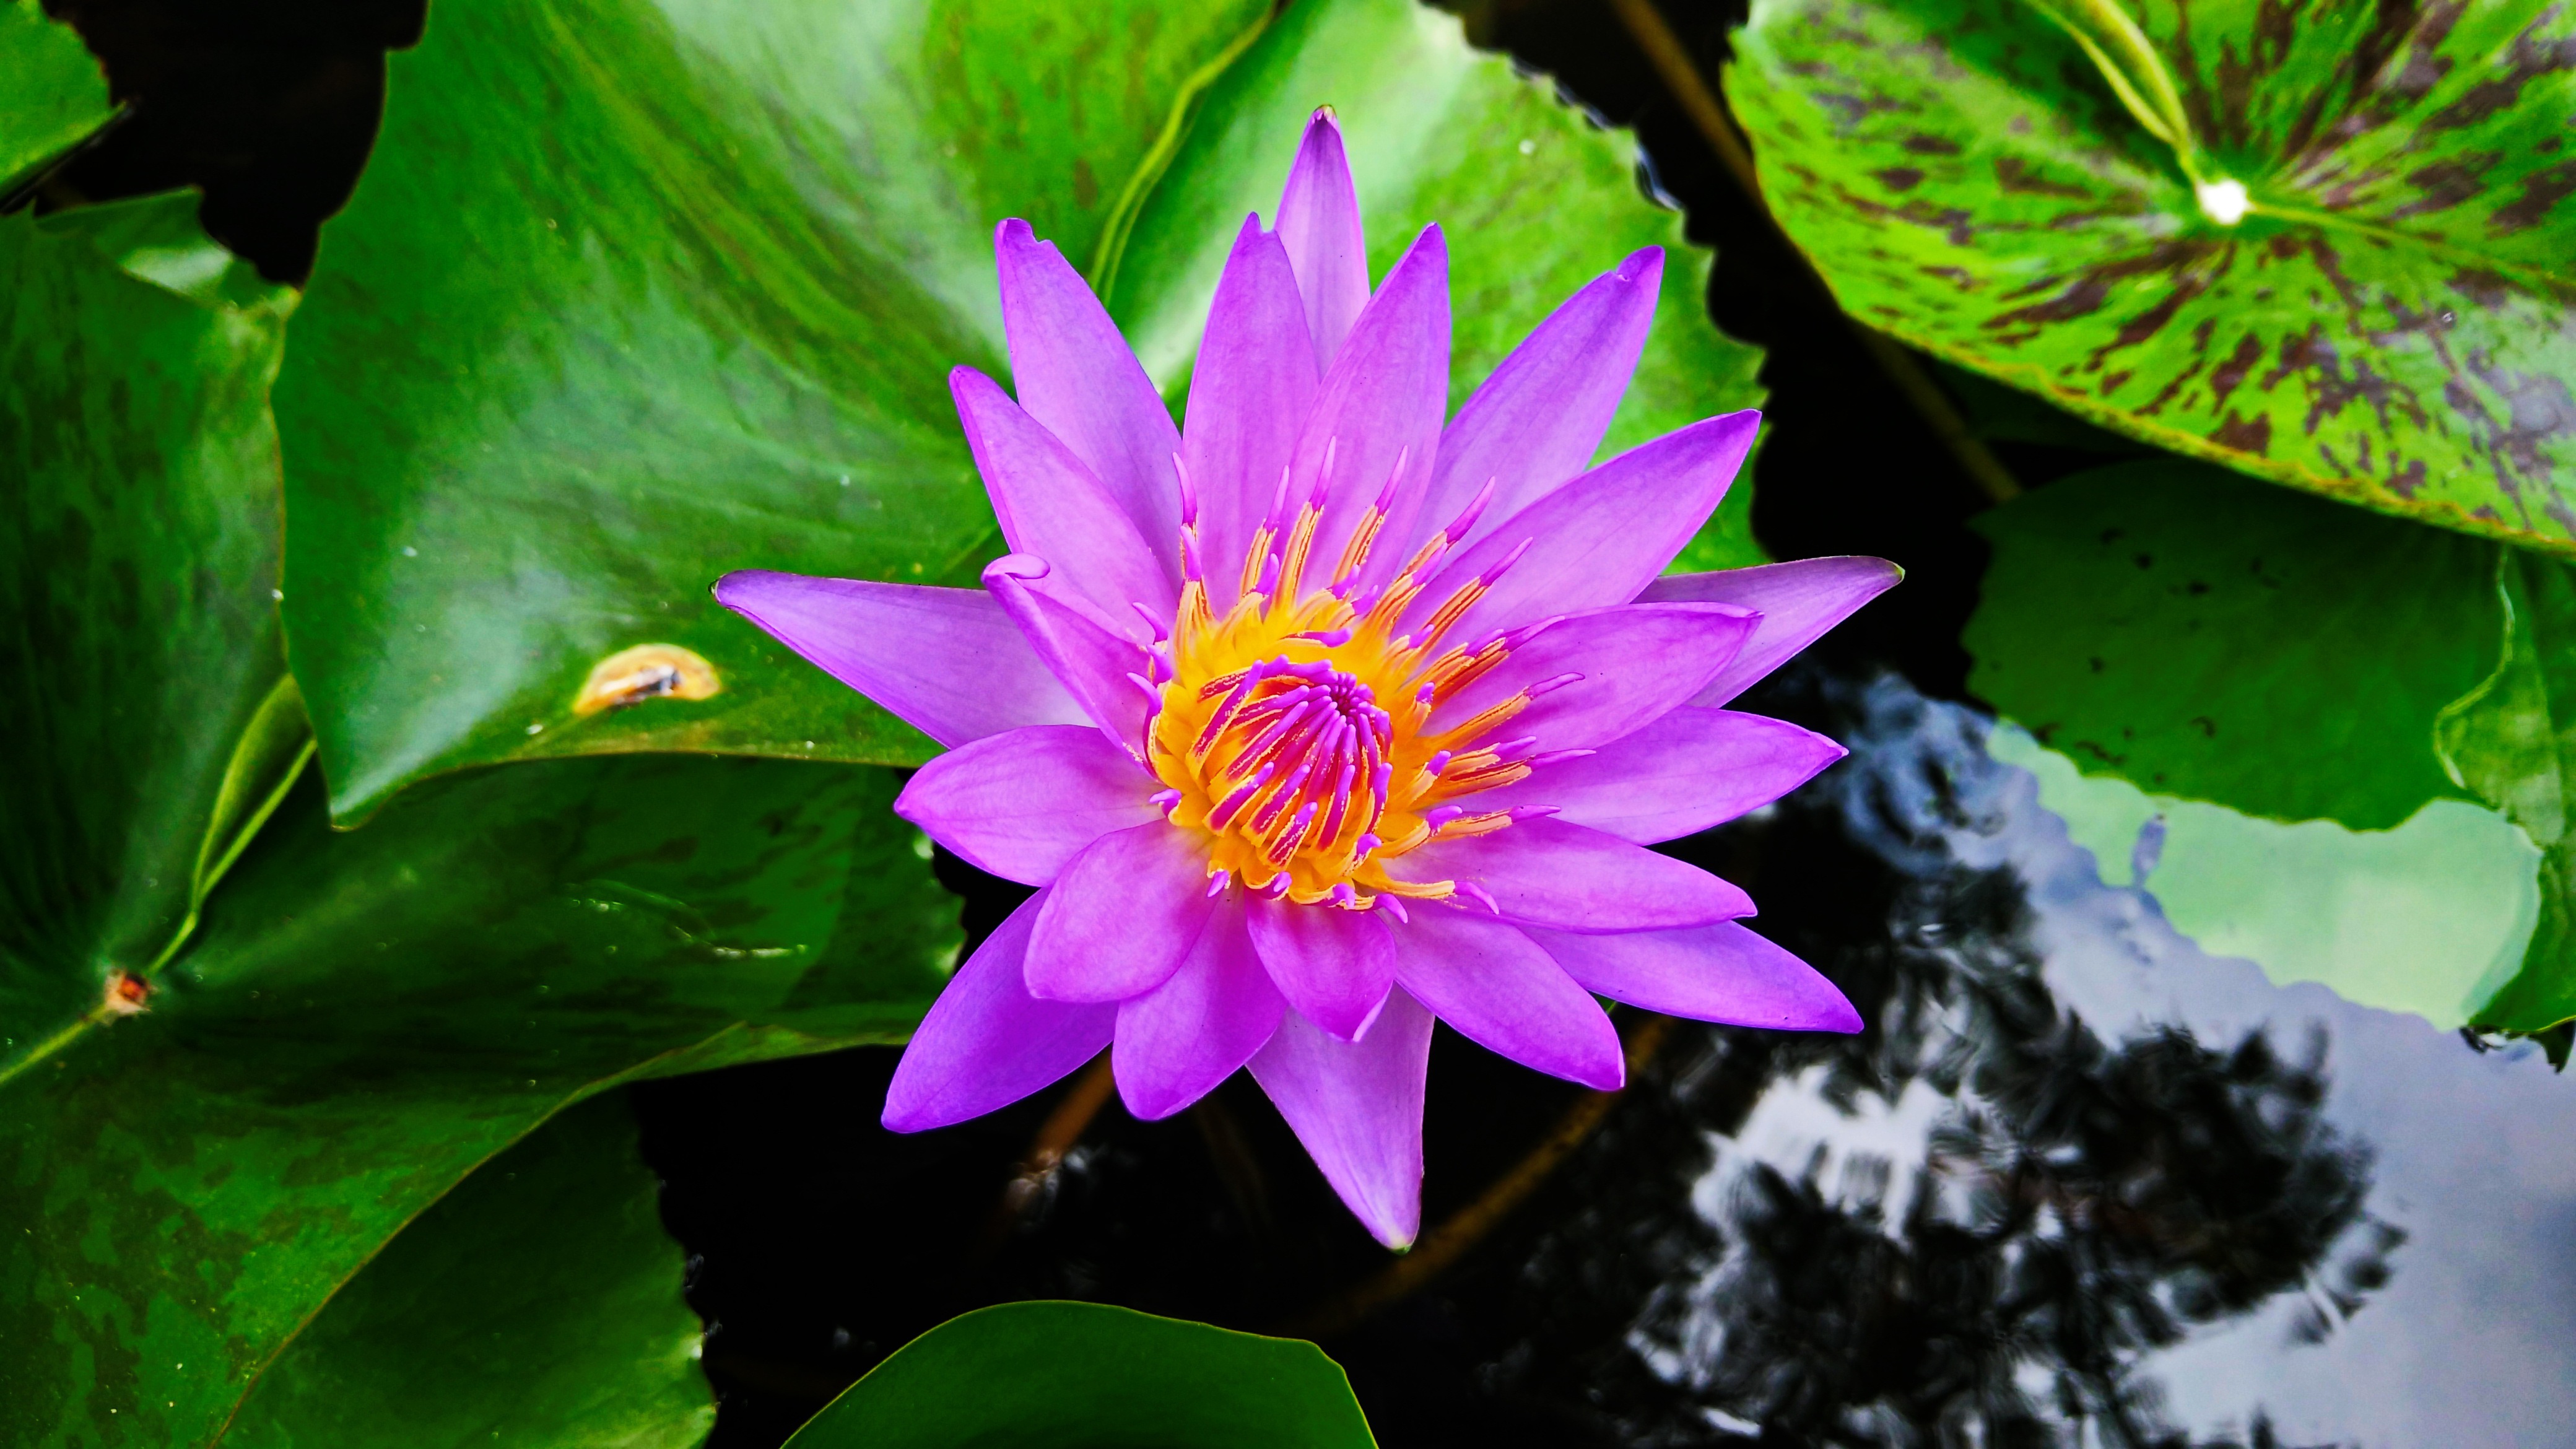 Lotus Nature Green free image download